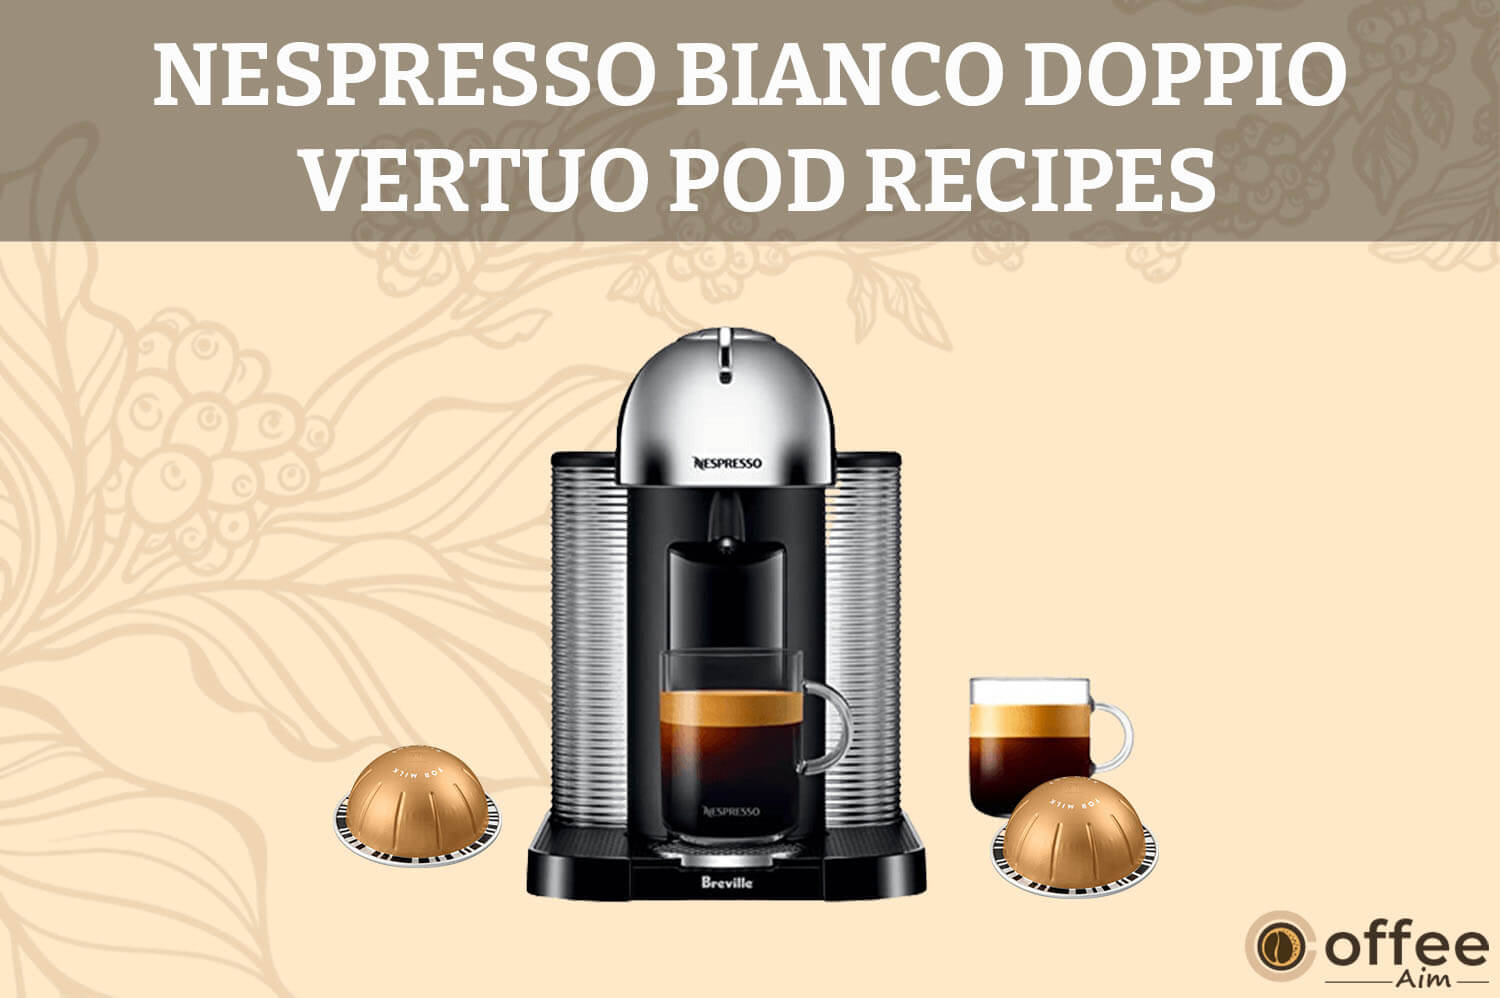 Featured image for the article "Nespresso Bianco Doppio Vertuo Pod Recipes"